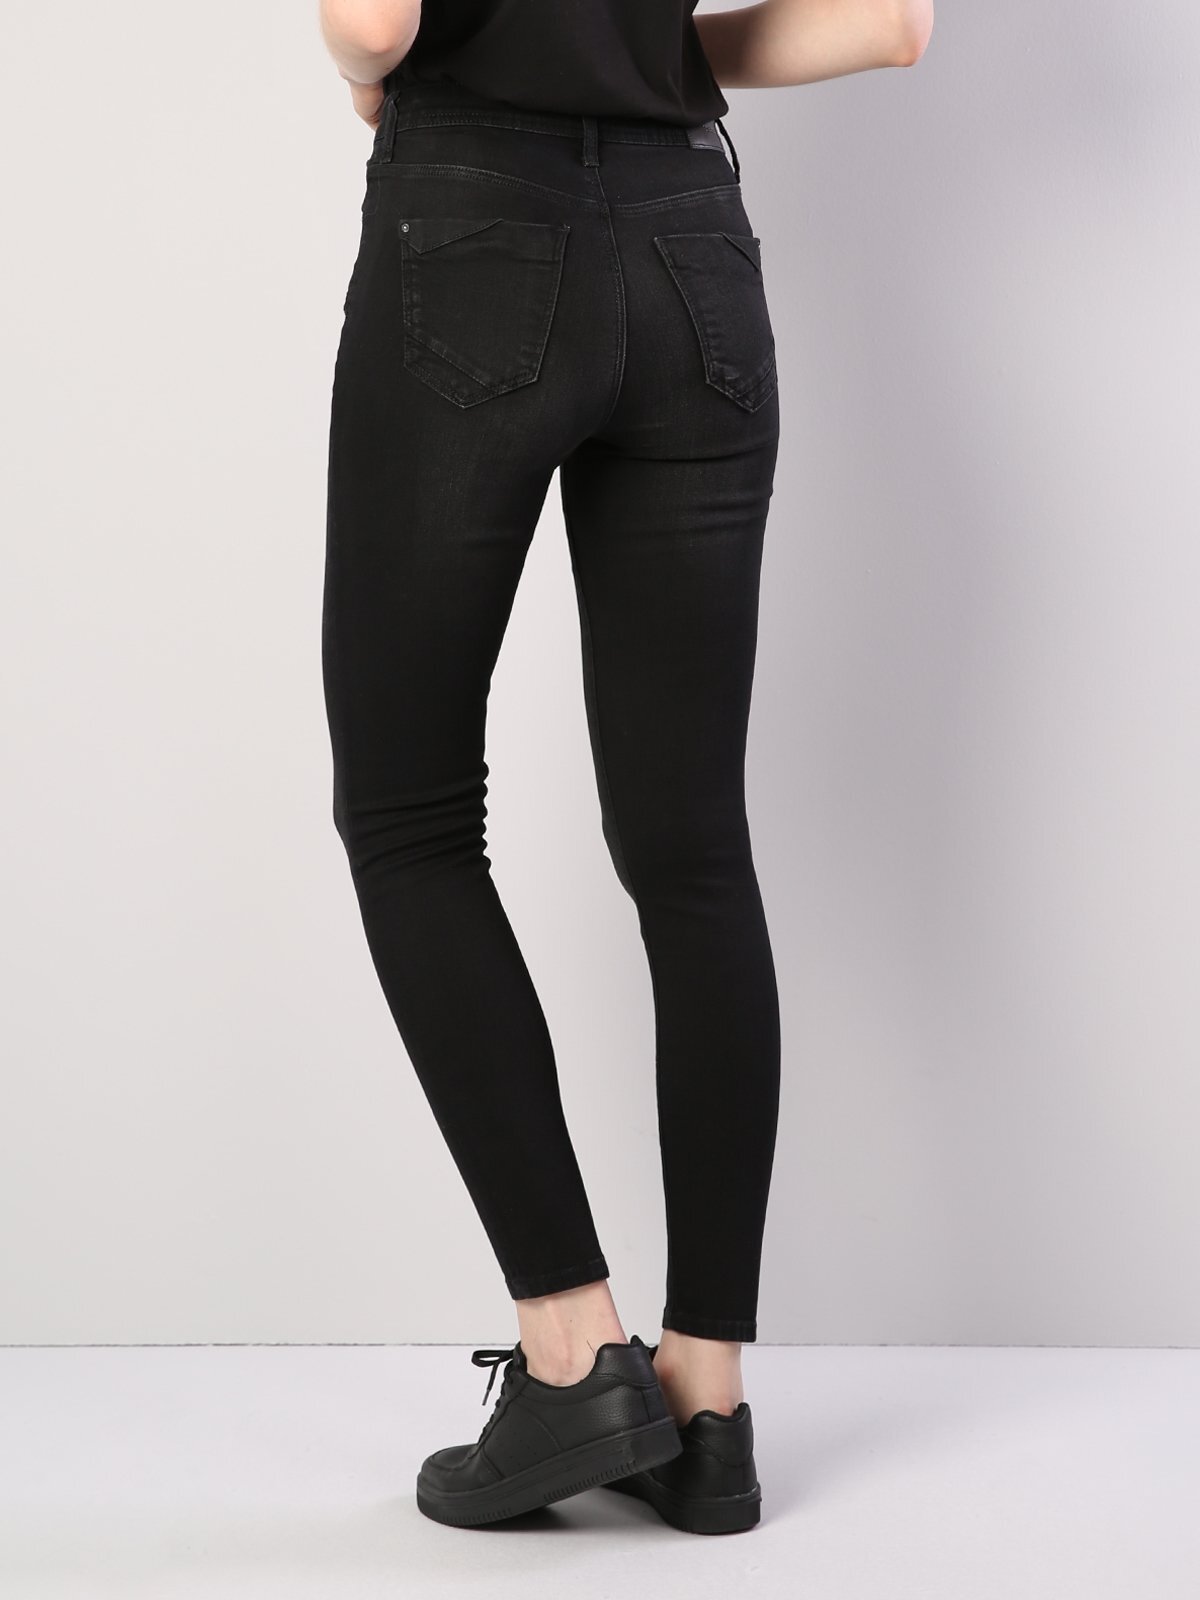 Colins 760 Dıana Yüksek Bel Dar Paça Super Slim Fit Siyah Kadın Jean Pantolon. 2